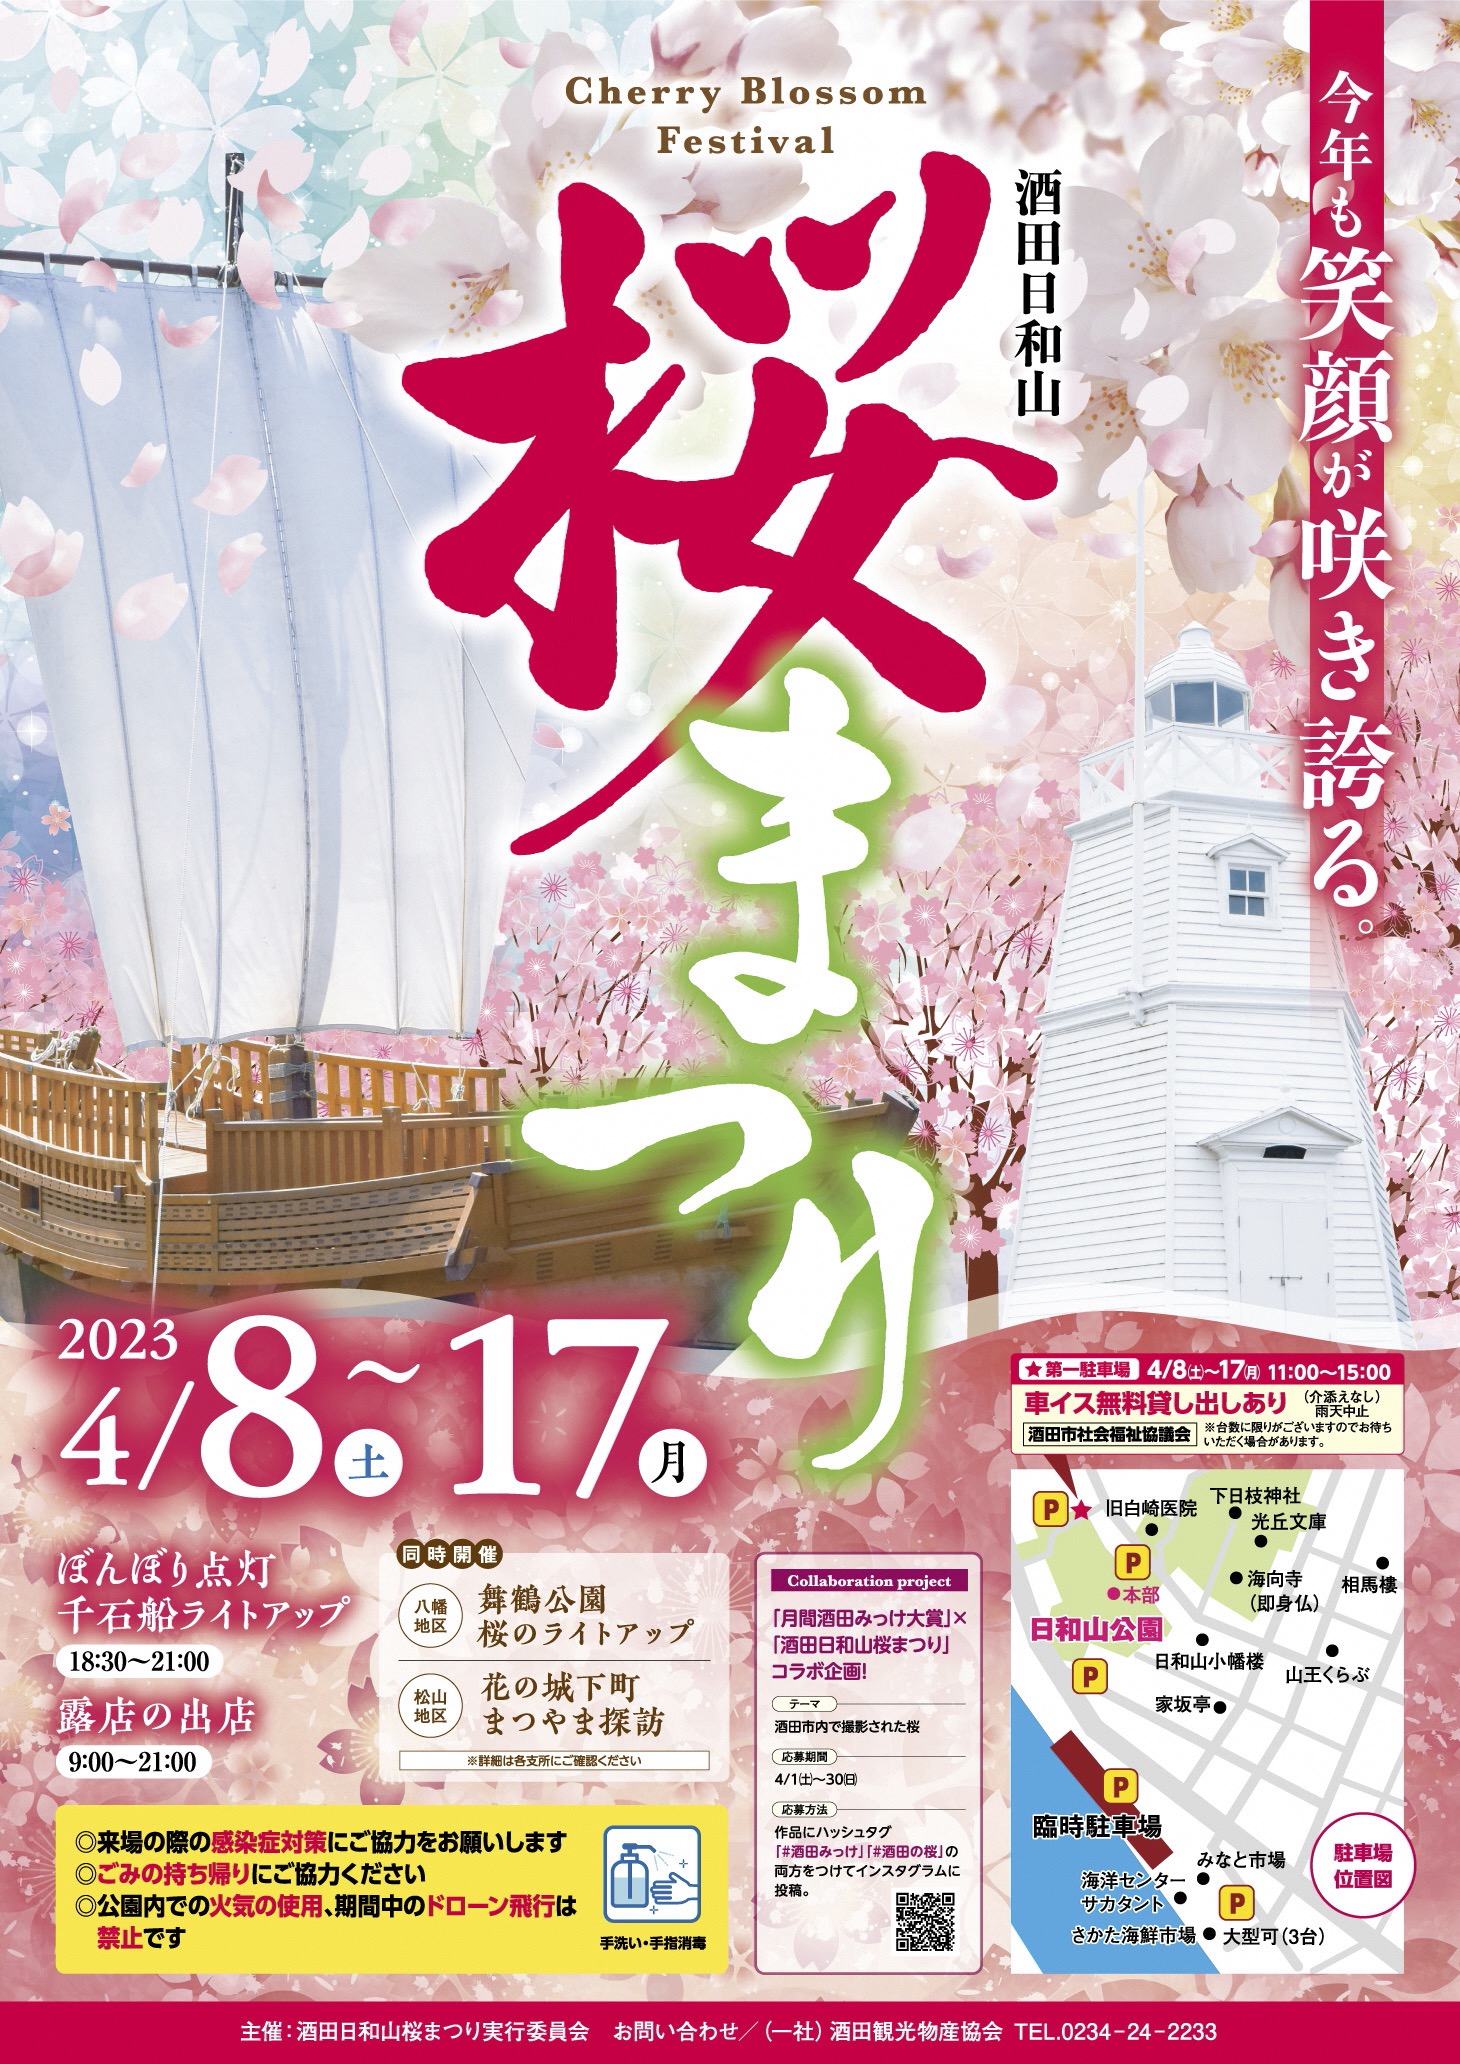 【山形イベント情報】4/8〜酒田日和山桜まつりが開催されます。(酒田市)